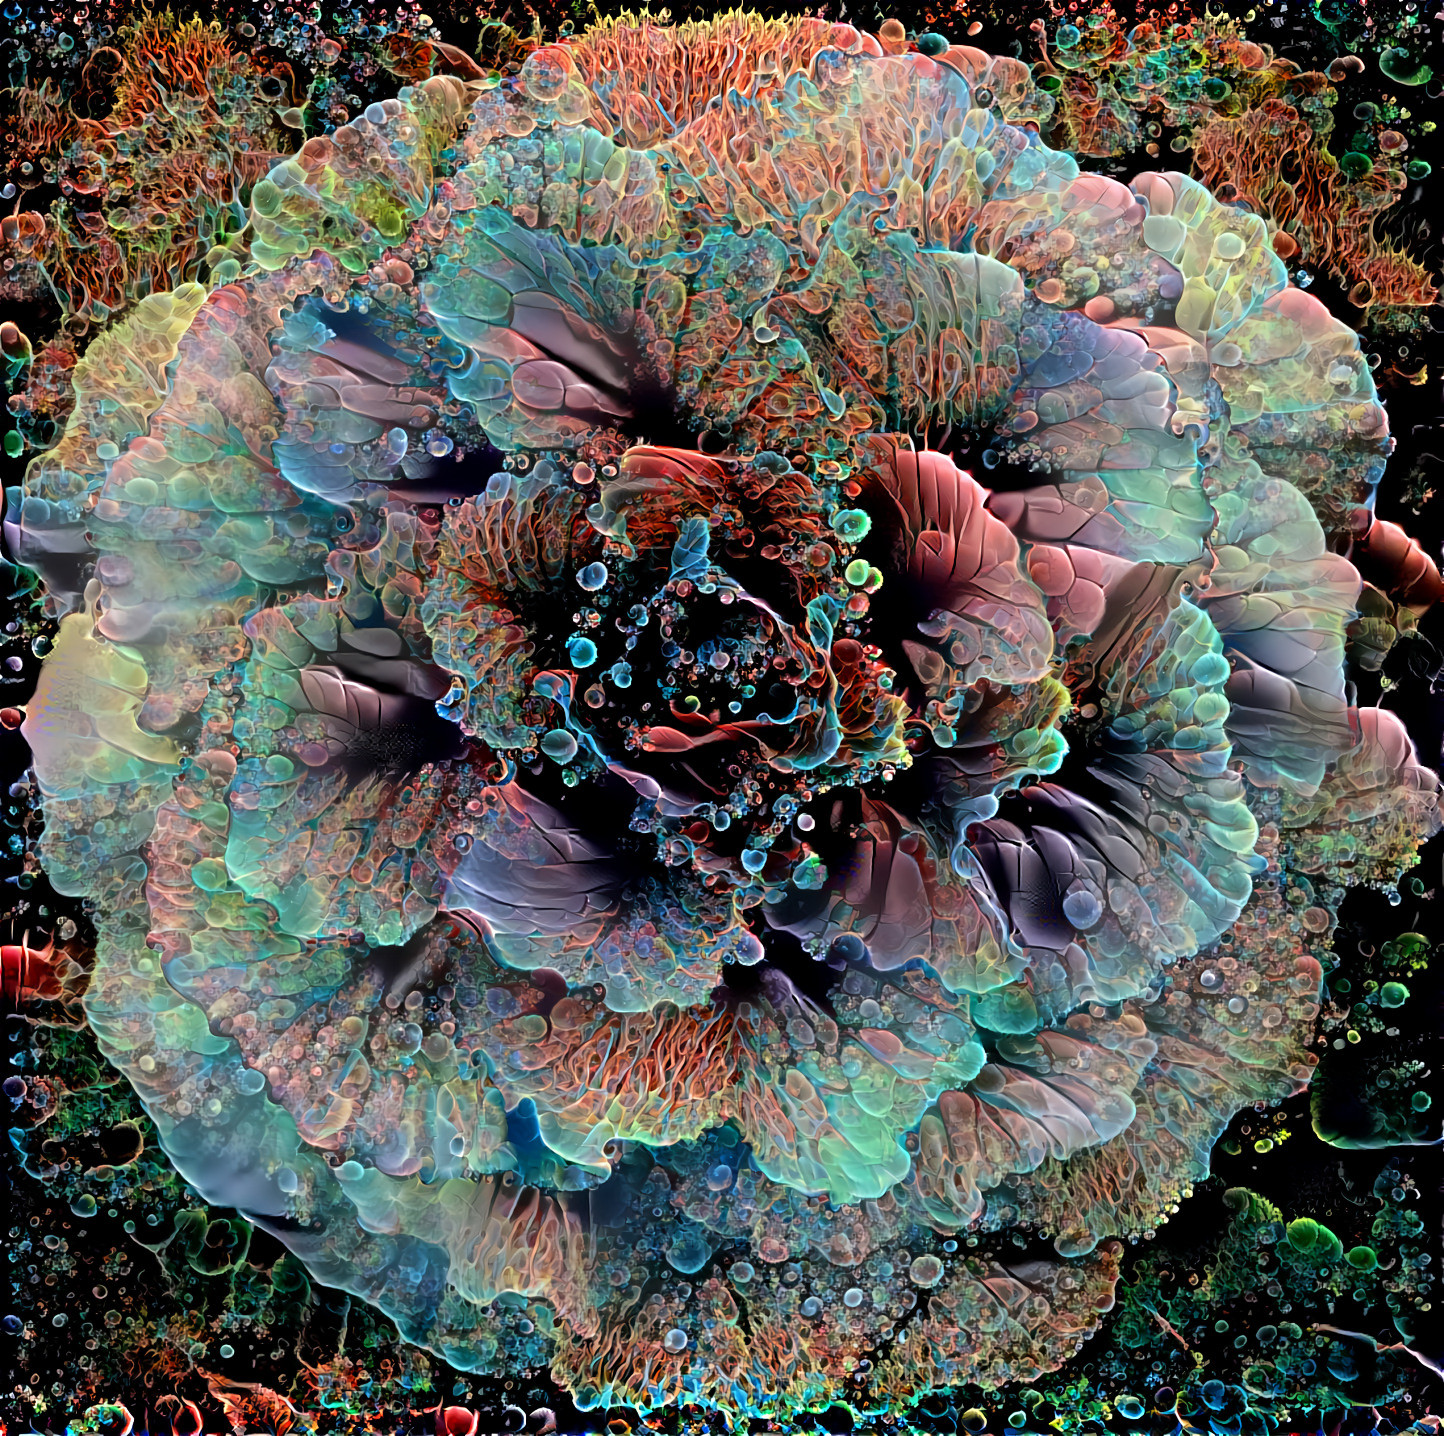 Translucent Cabbage Rose